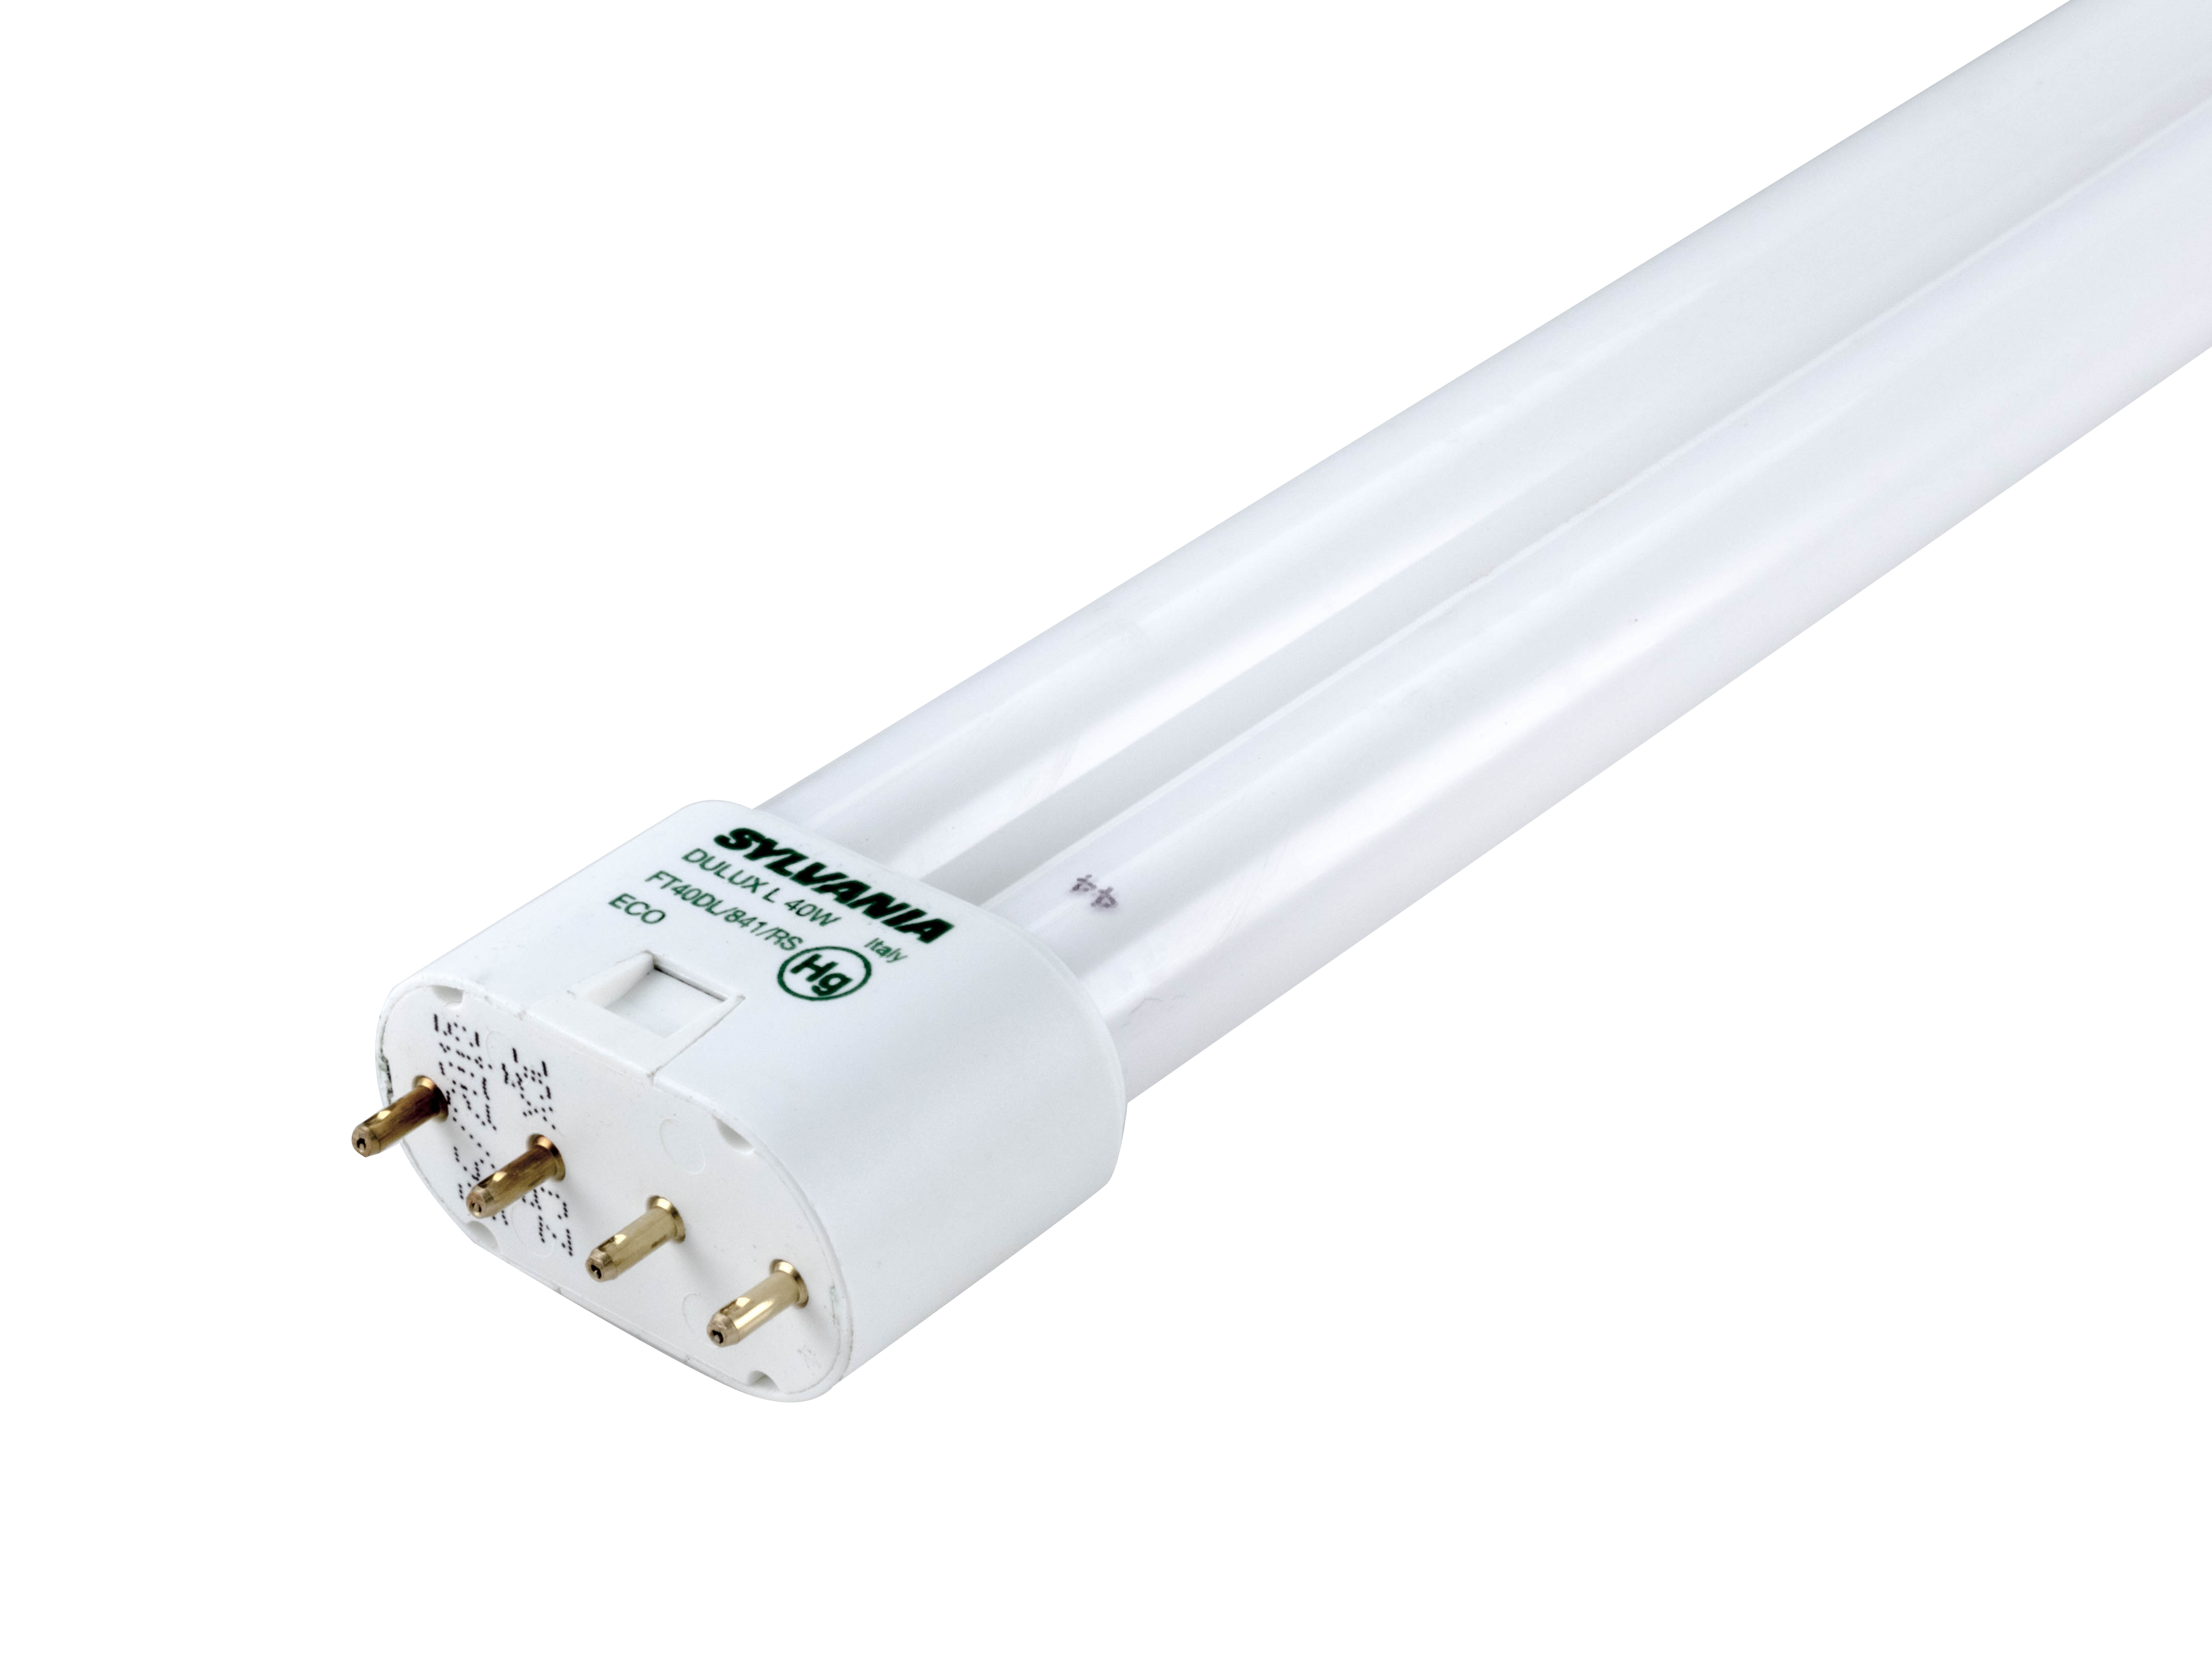 PLUSRITE Long  Single Tube fluorescent 4-pin 2g11 base 55w Lamp Light Bulb 120v